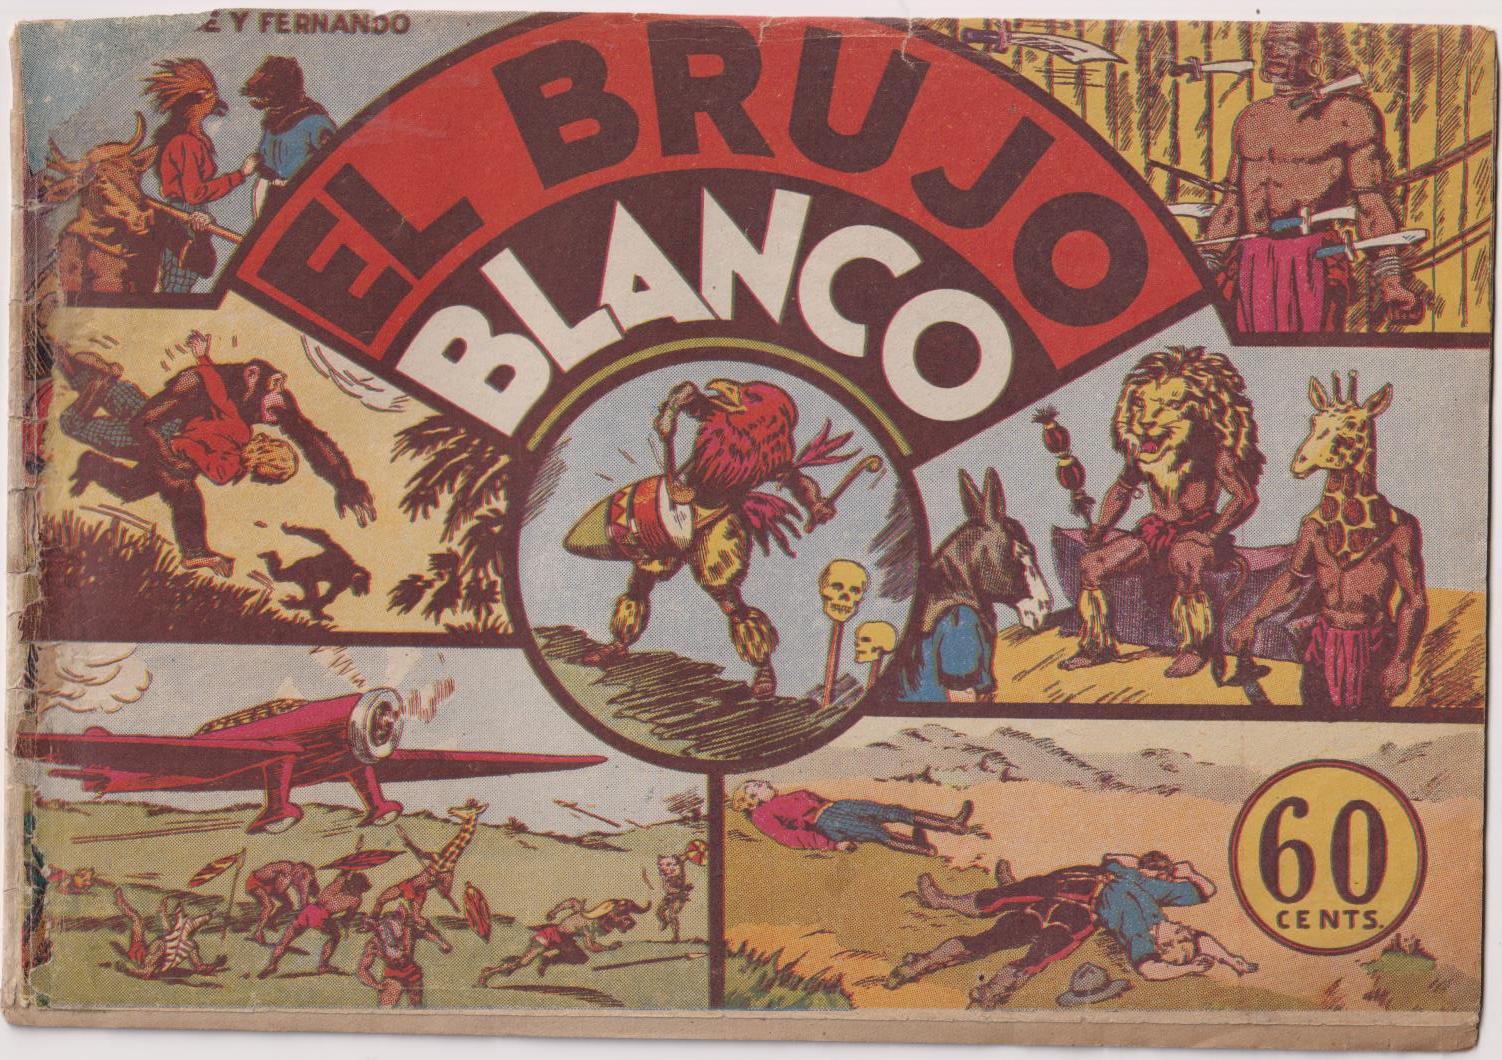 Jorge y Fernando . El Brujo Blanco. Hispano Americana 1940